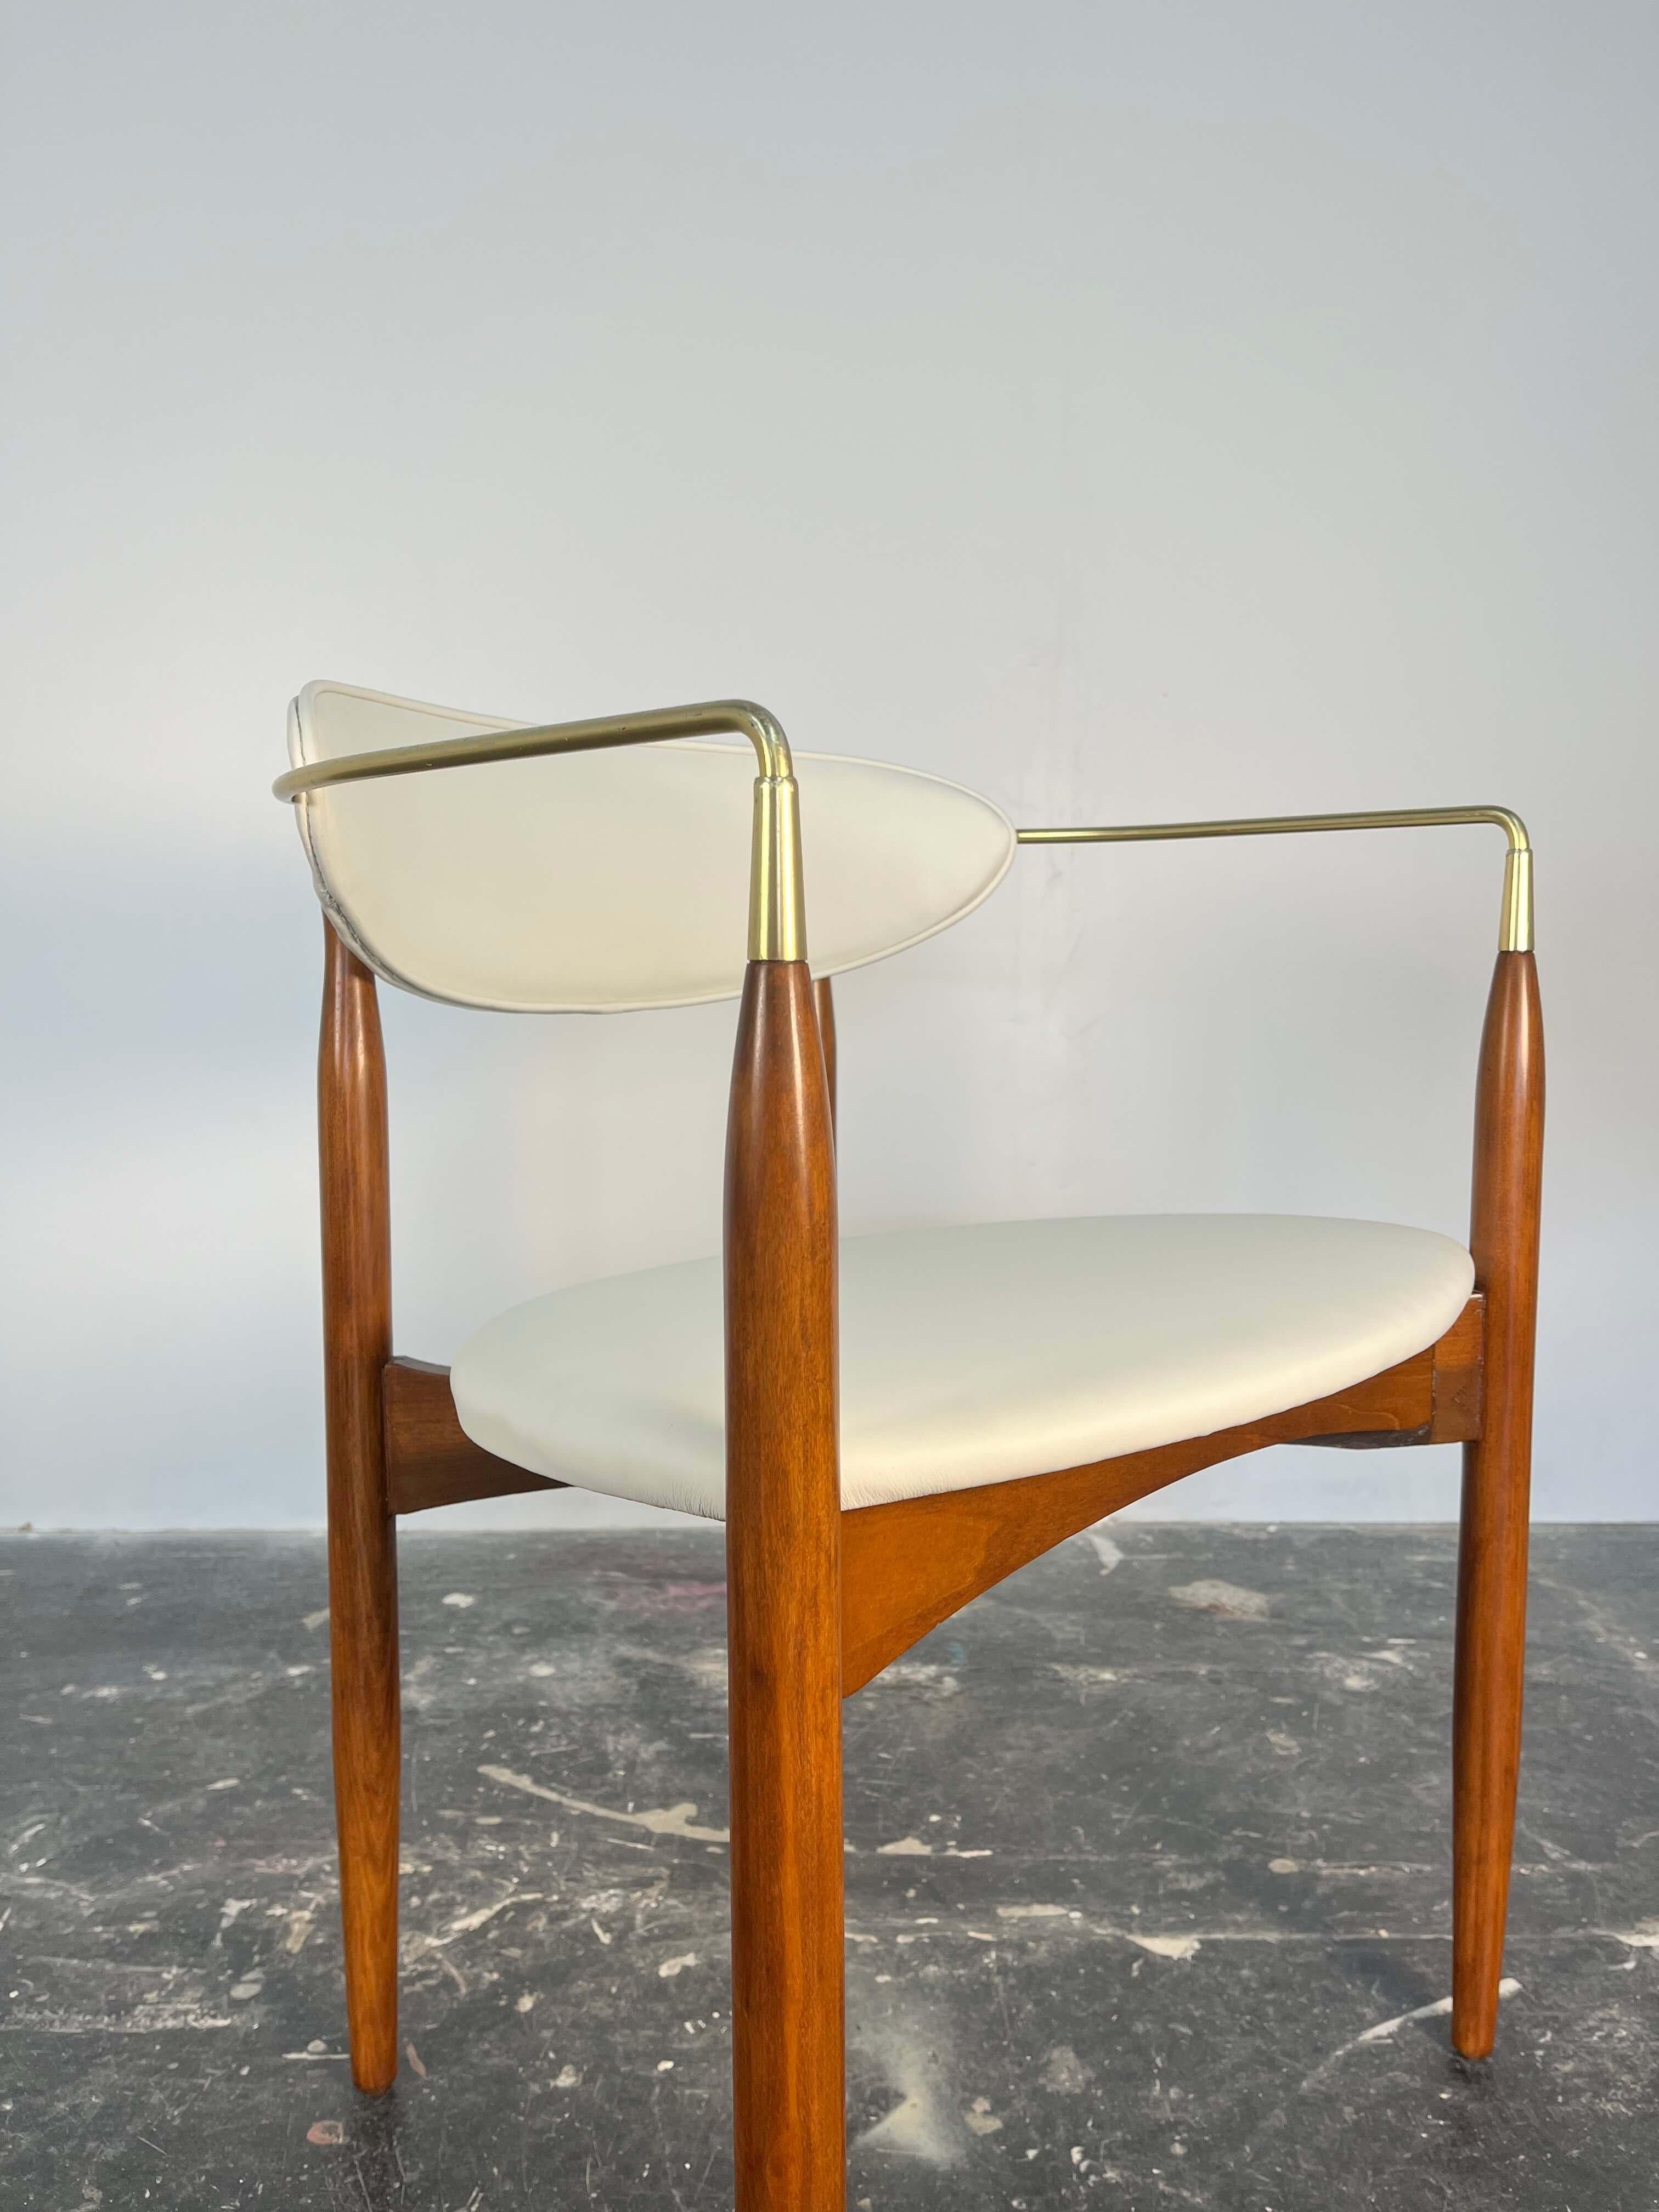 Dies ist ein wunderschönes Set von 4 Esszimmerstühlen, die von Dan Johnson für Selig entworfen wurden. Dramatische und geschwungene Form, diese Stühle haben die geschwungenen Arme aus massivem Messing. Die eleganten, konisch zulaufenden Beine sind